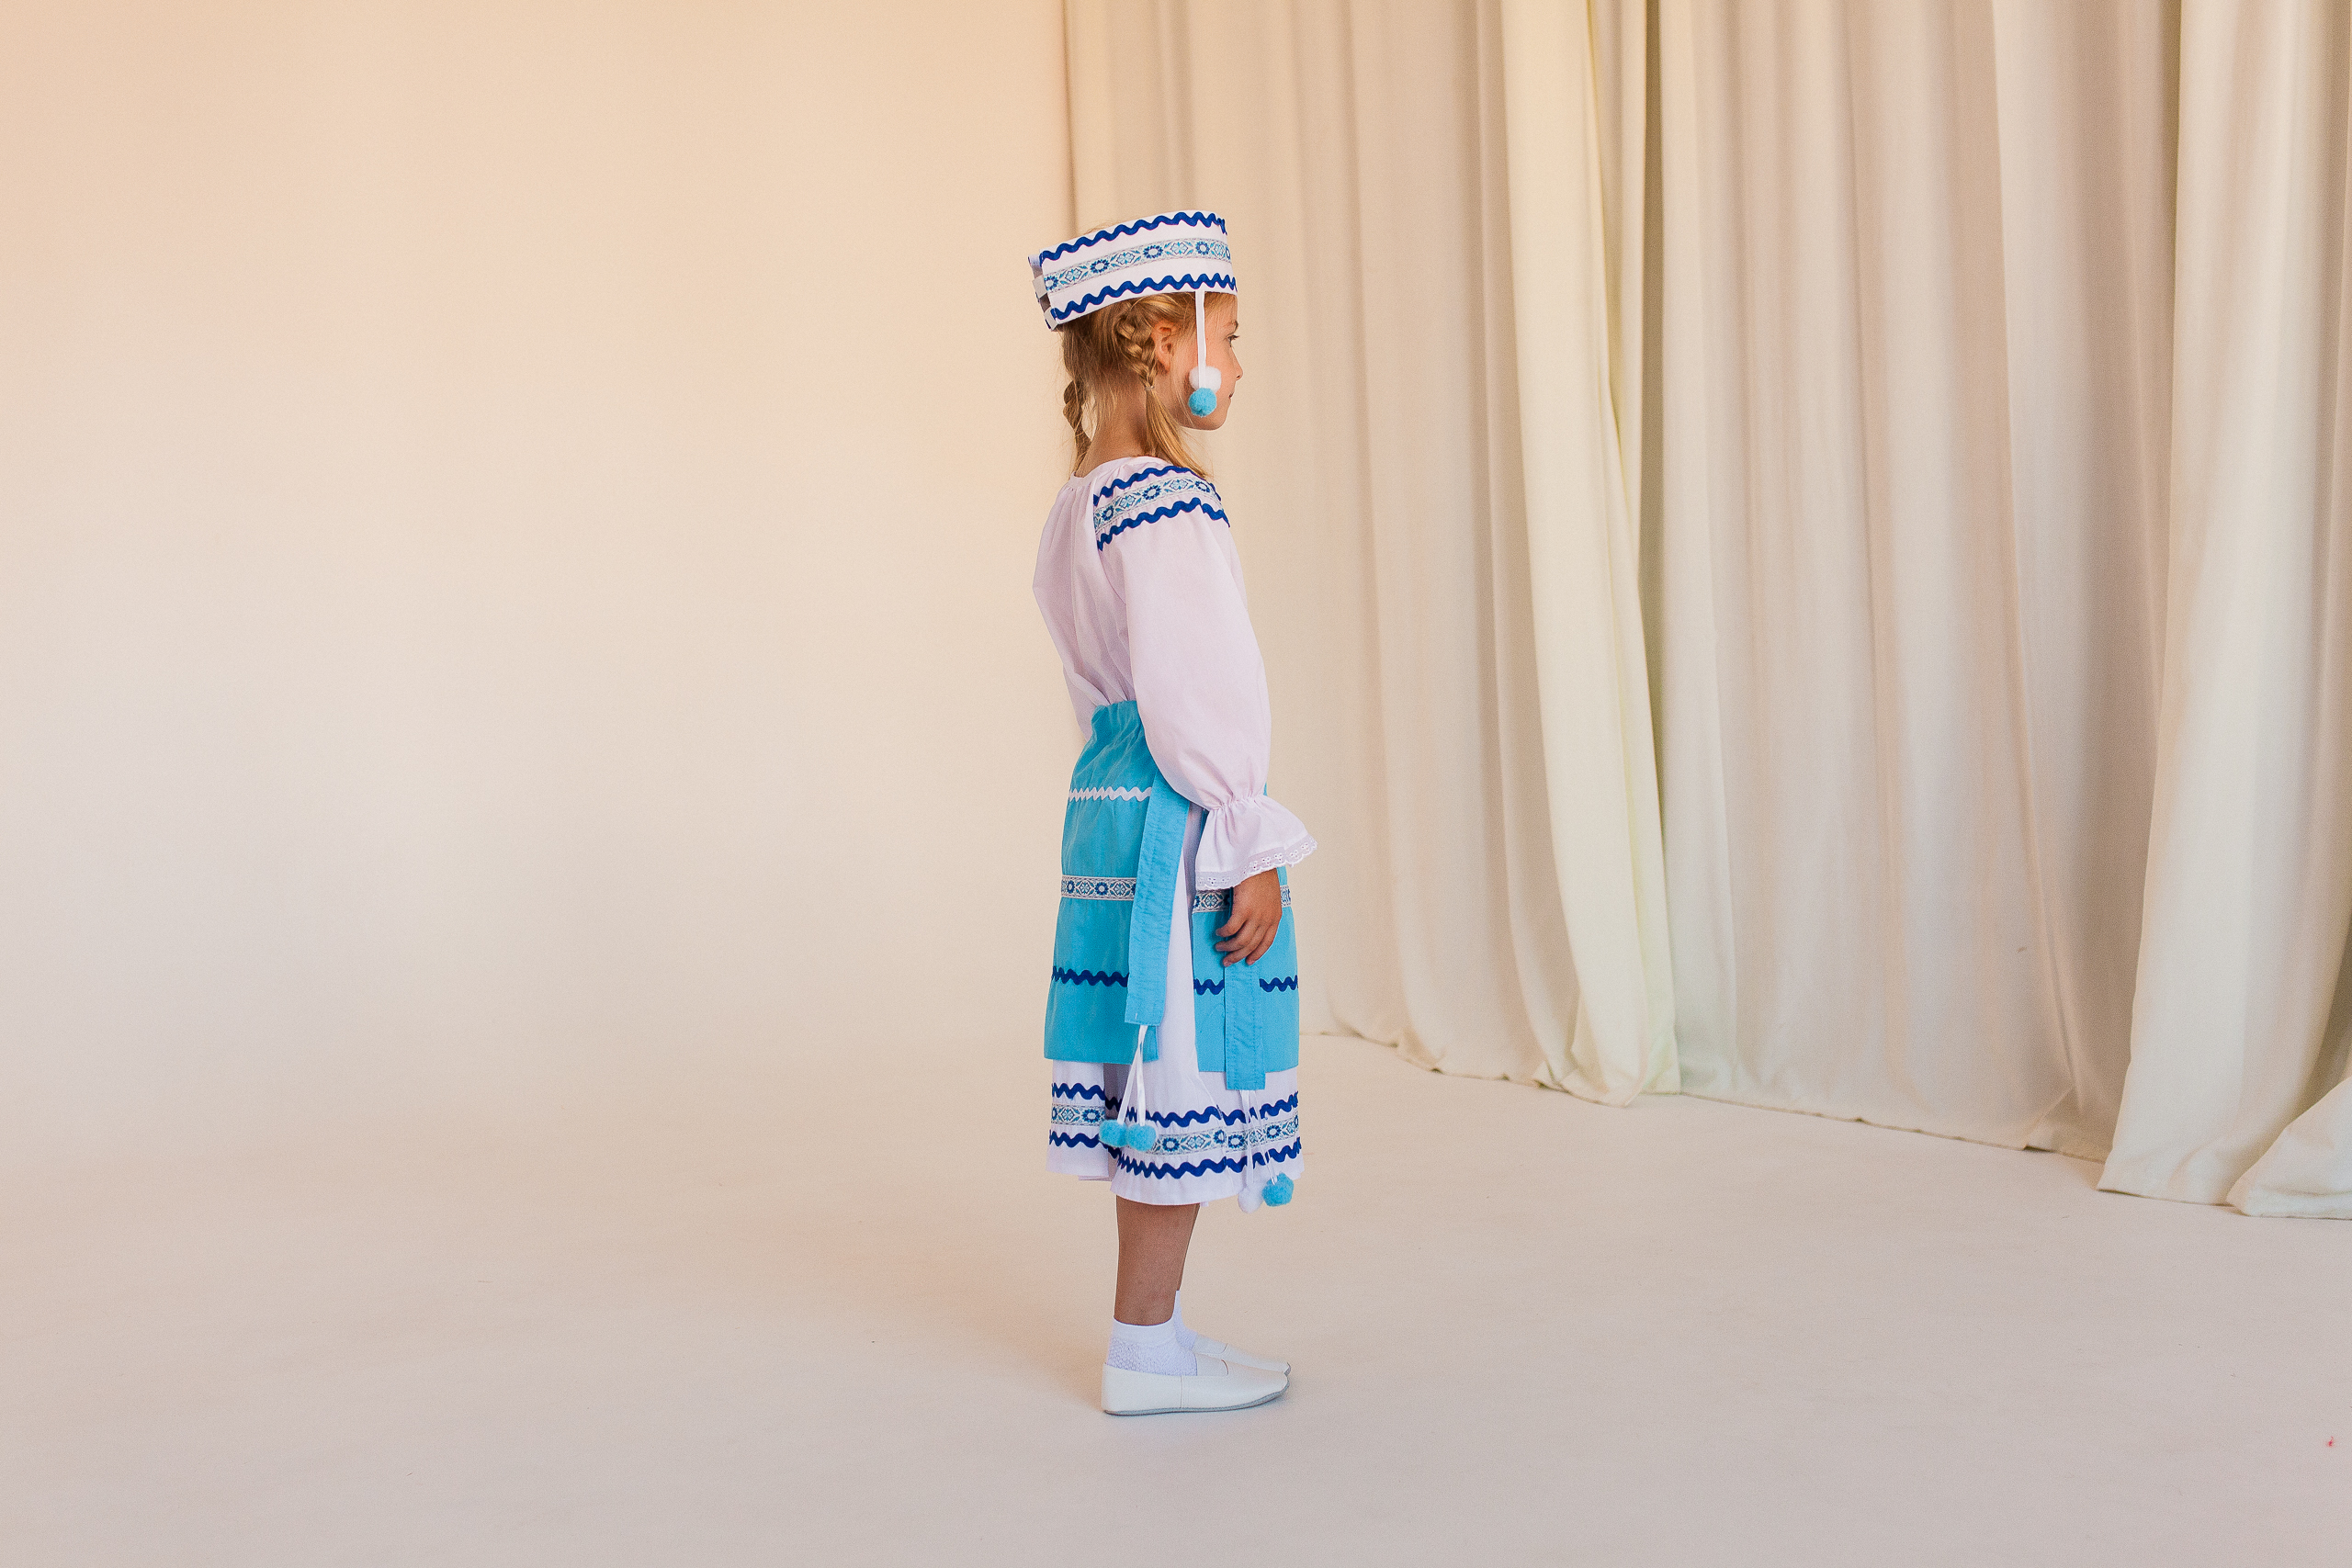 Белорусский народный костюм (девочка) (платье + фартук + головной убор)